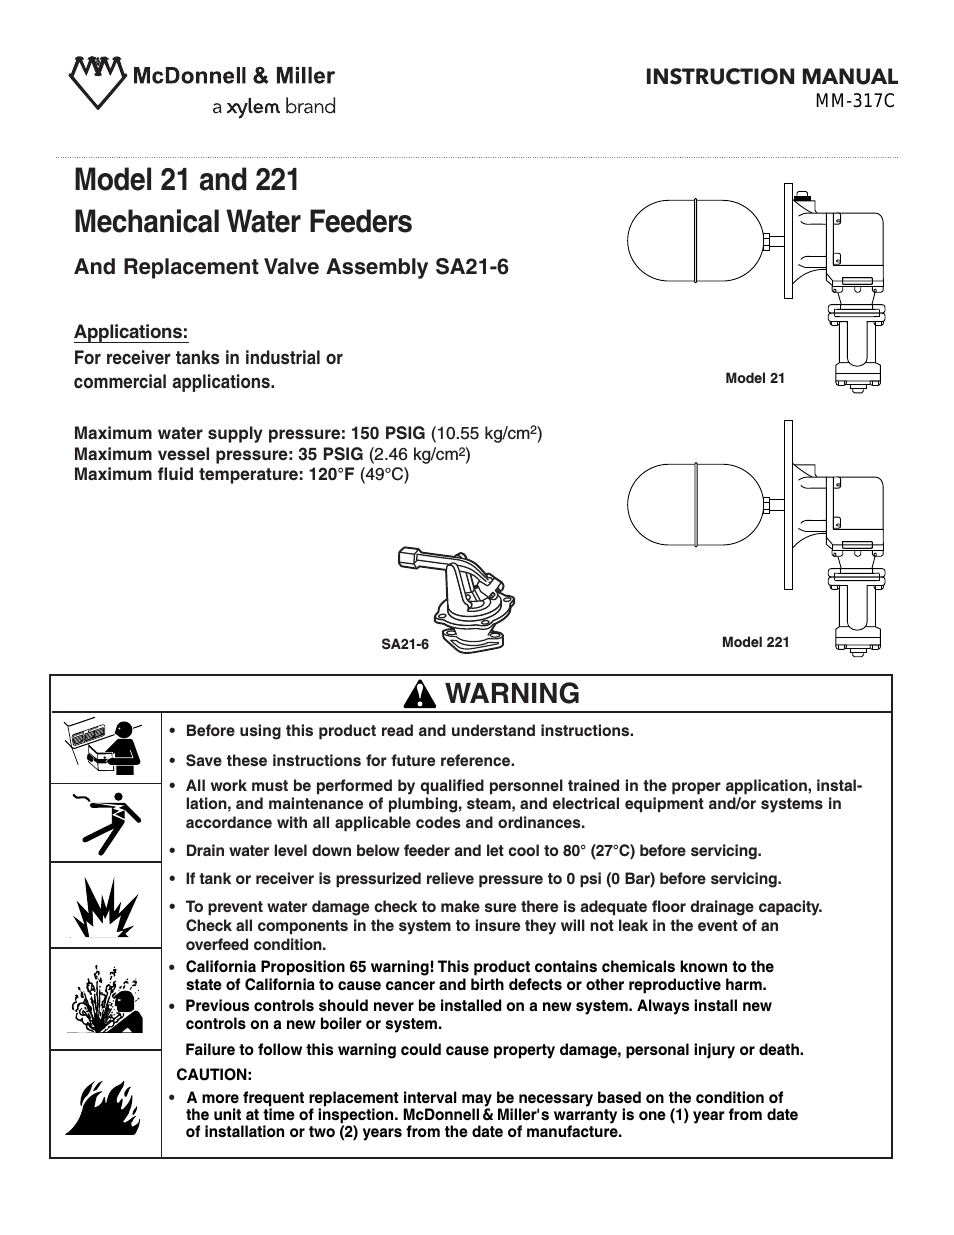 MM 317C Models 21 & 221 Mechanical Water Feeders